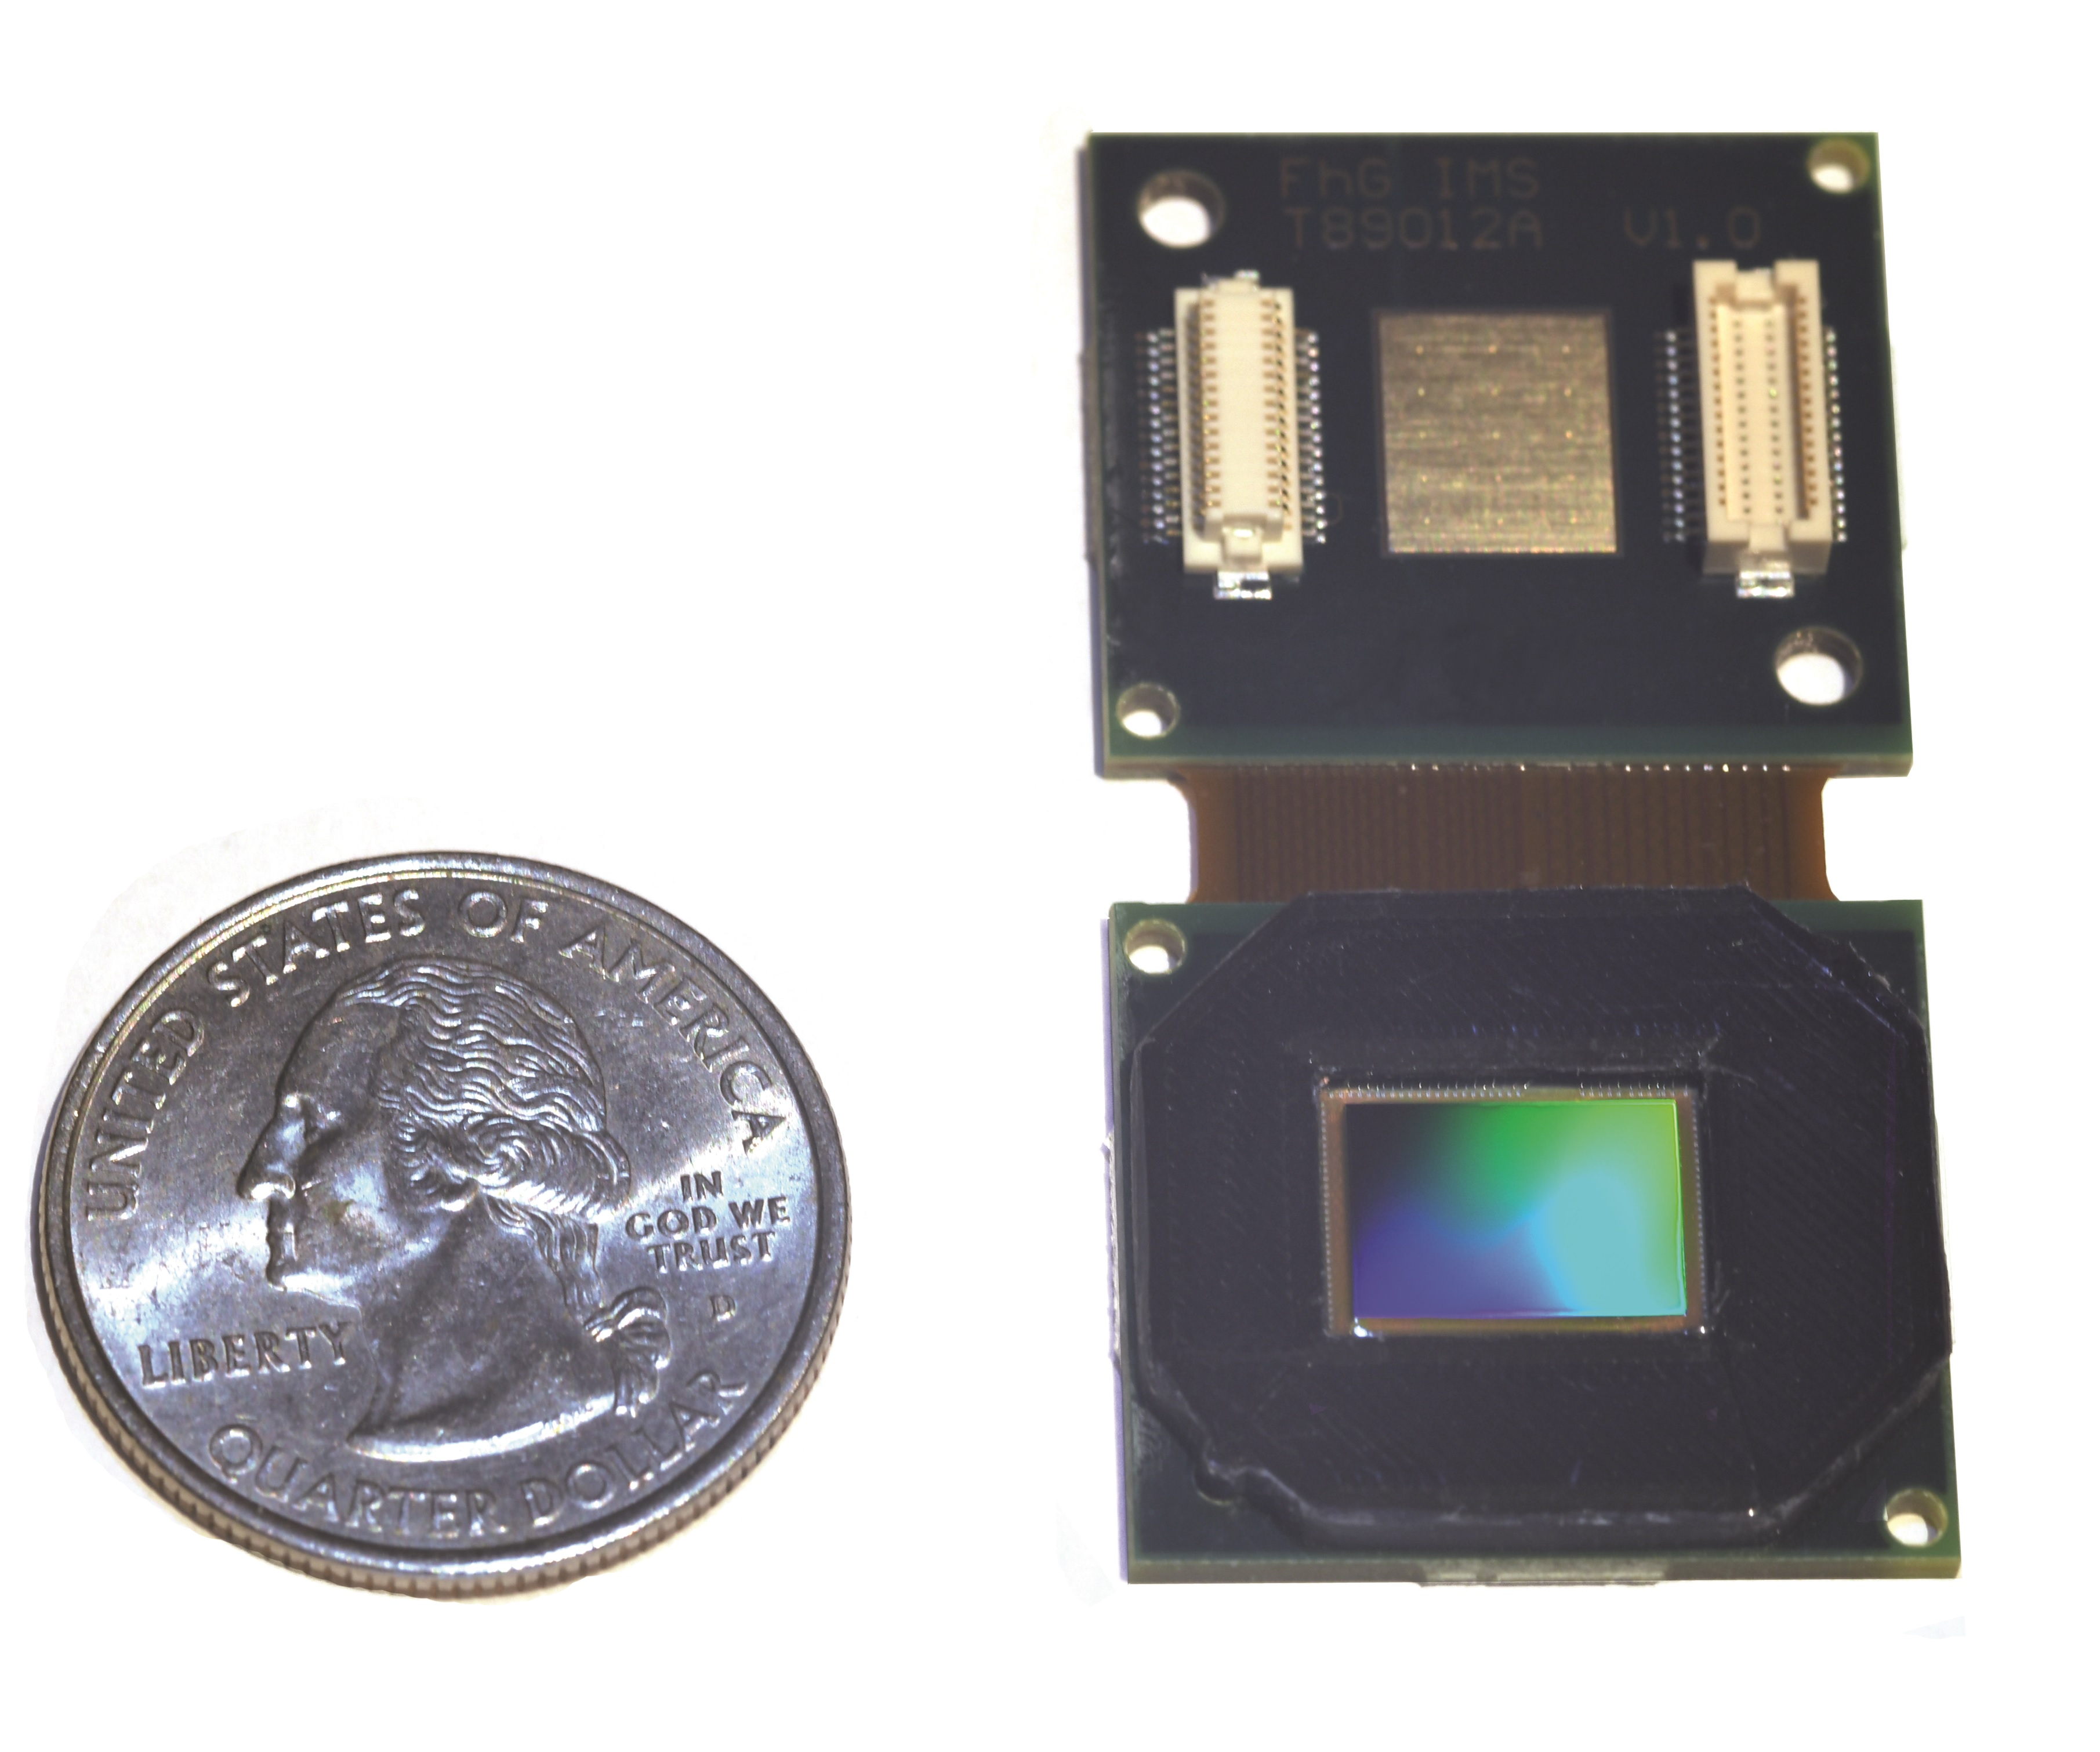 Digitale 17 μm QVGA-IRFPAs montiert auf Detektorboard inklusive Schutzkappe ist im Vergleich zu einer 25-Cent-Münze angezeigt.